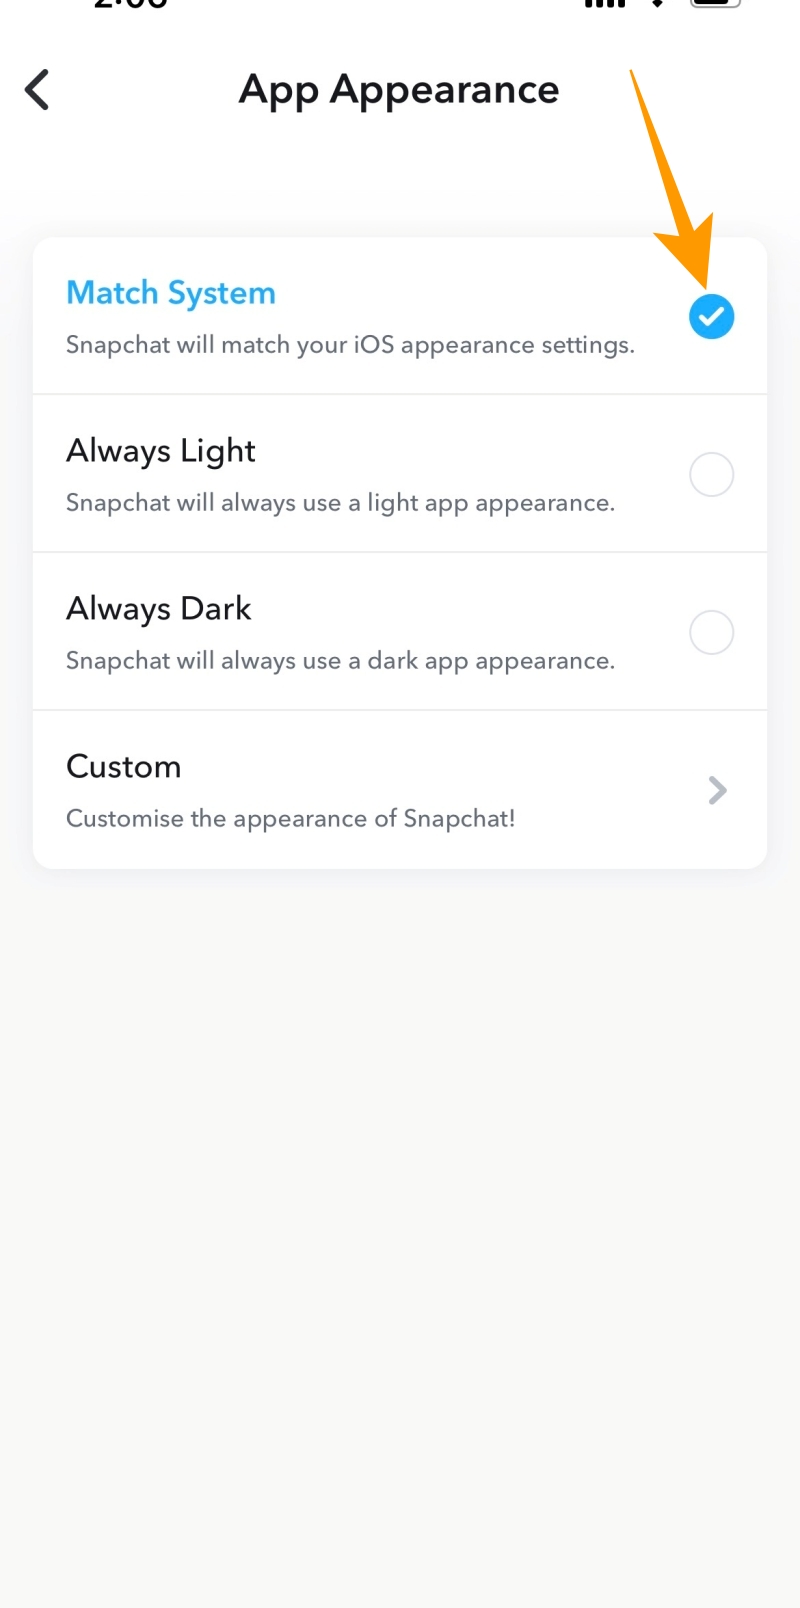 App appearance options on iOS